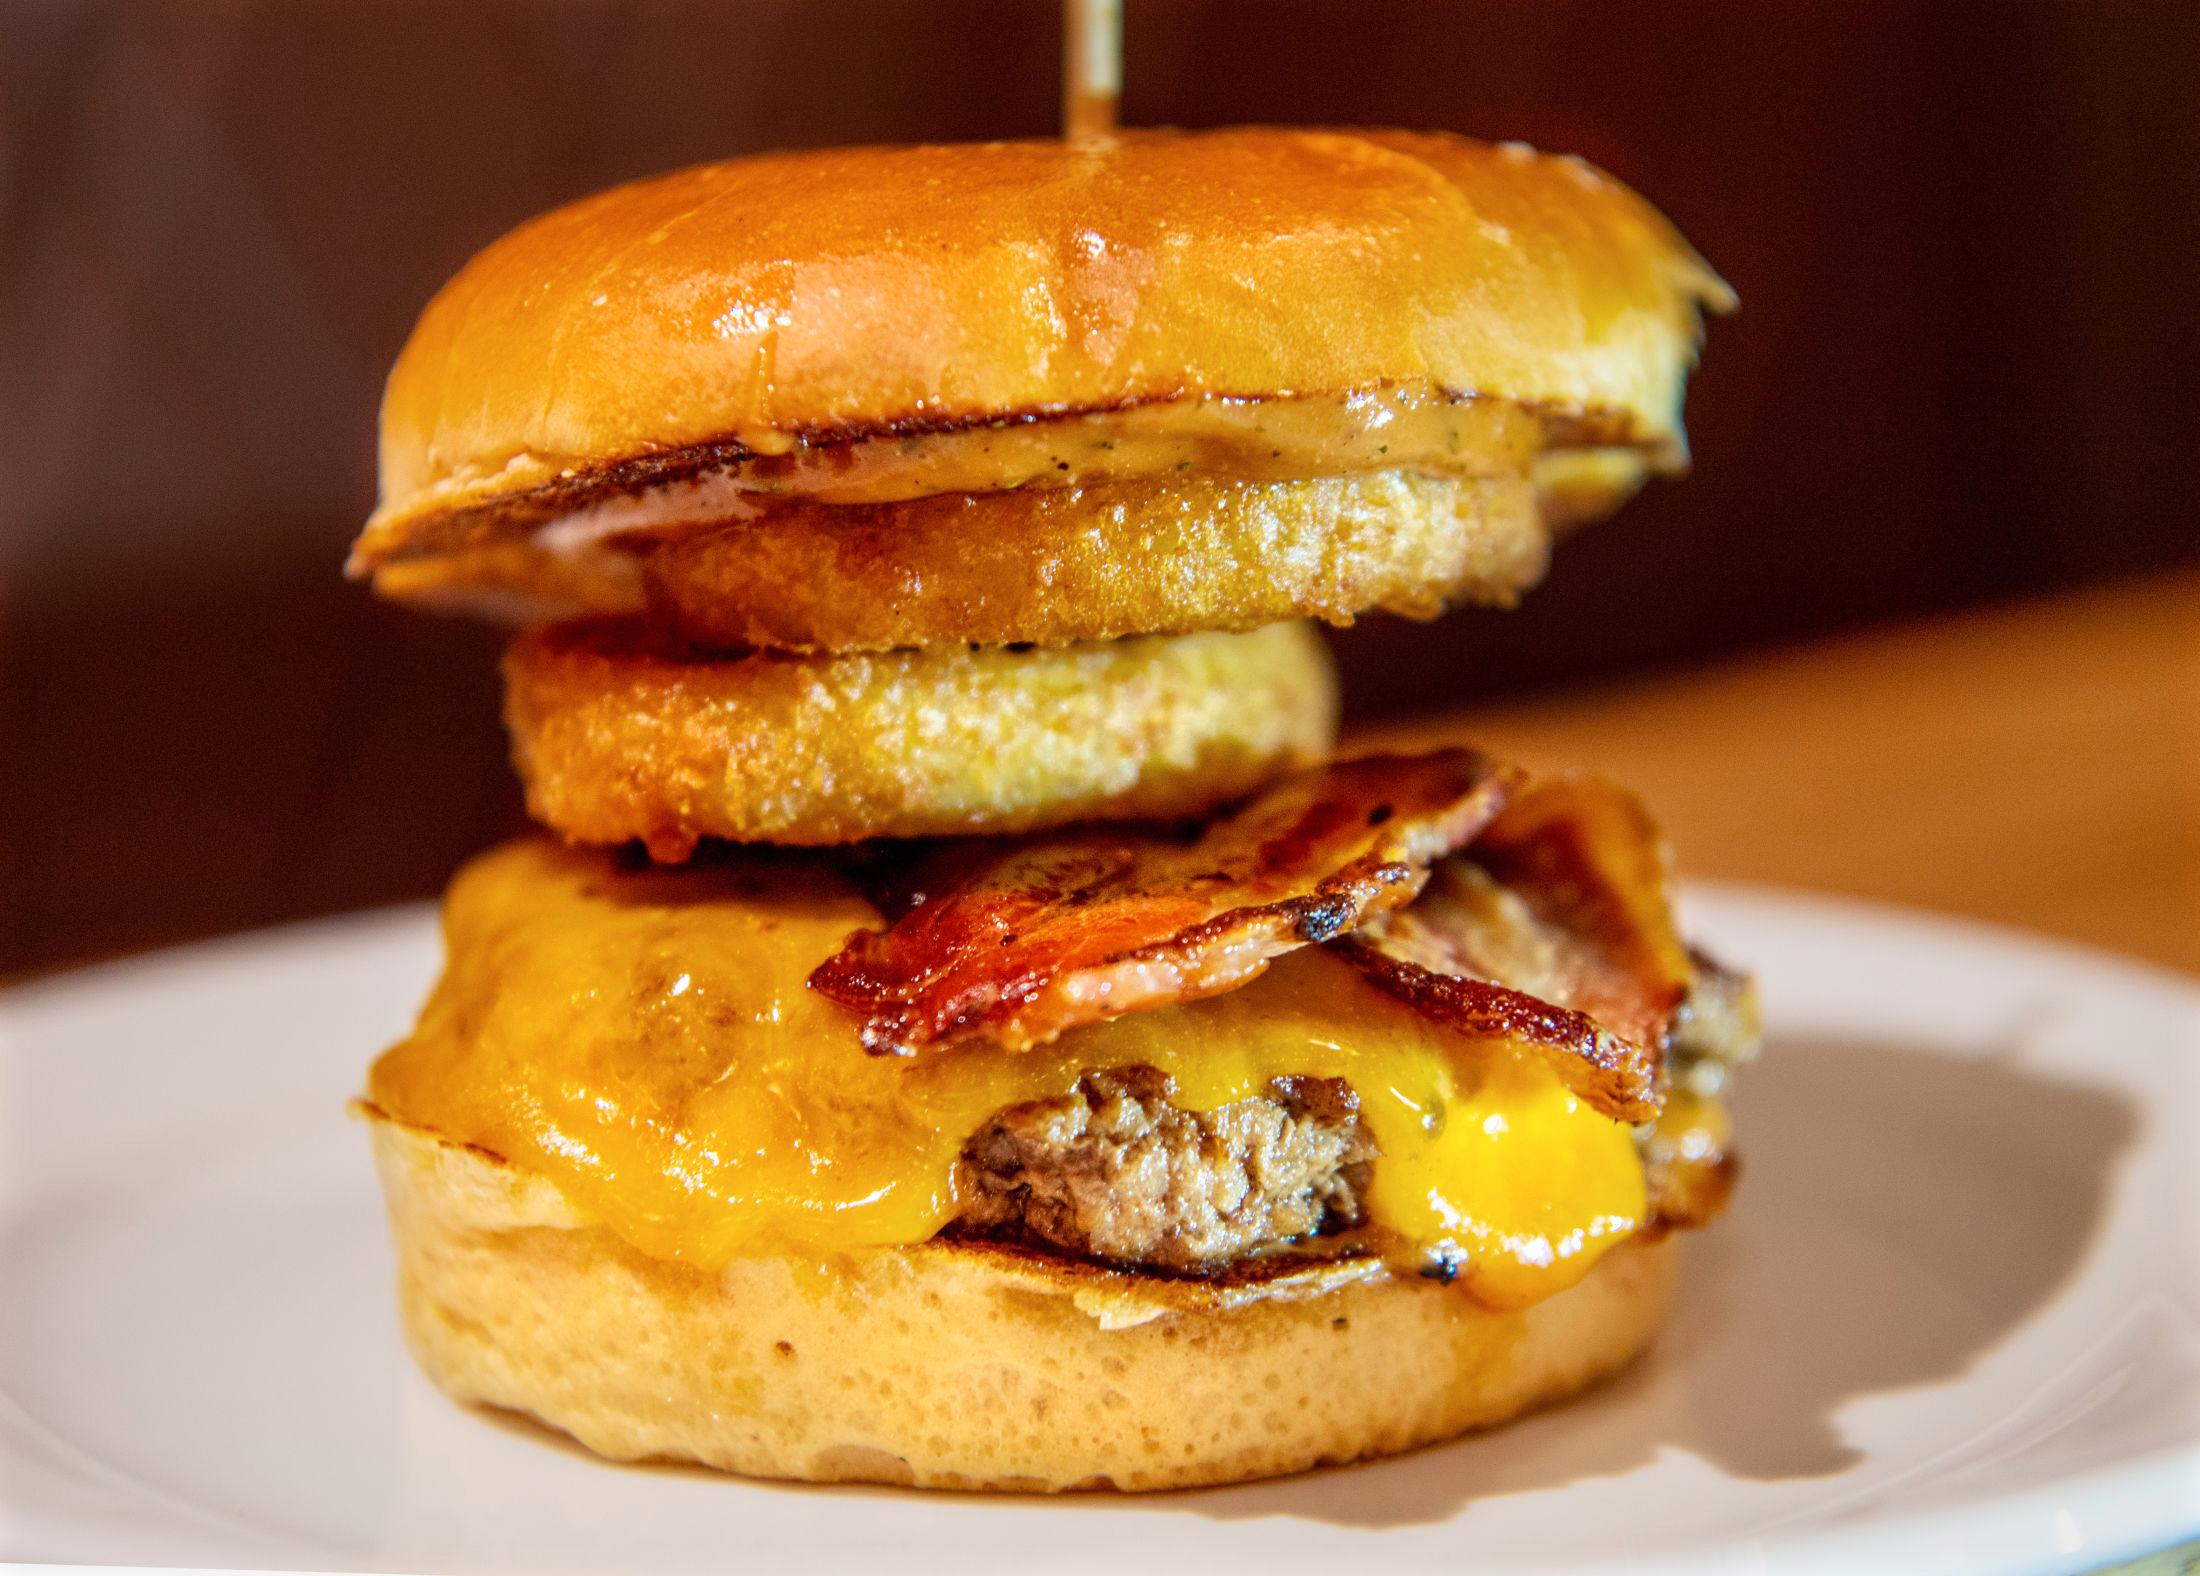 SMOKE HOUSE: VGs restaurantanmelder mener Smoke House-burgeren hadde en mer fremtredende smak enn den originale standardburgeren. Foto: Helge Mikalsen/VG